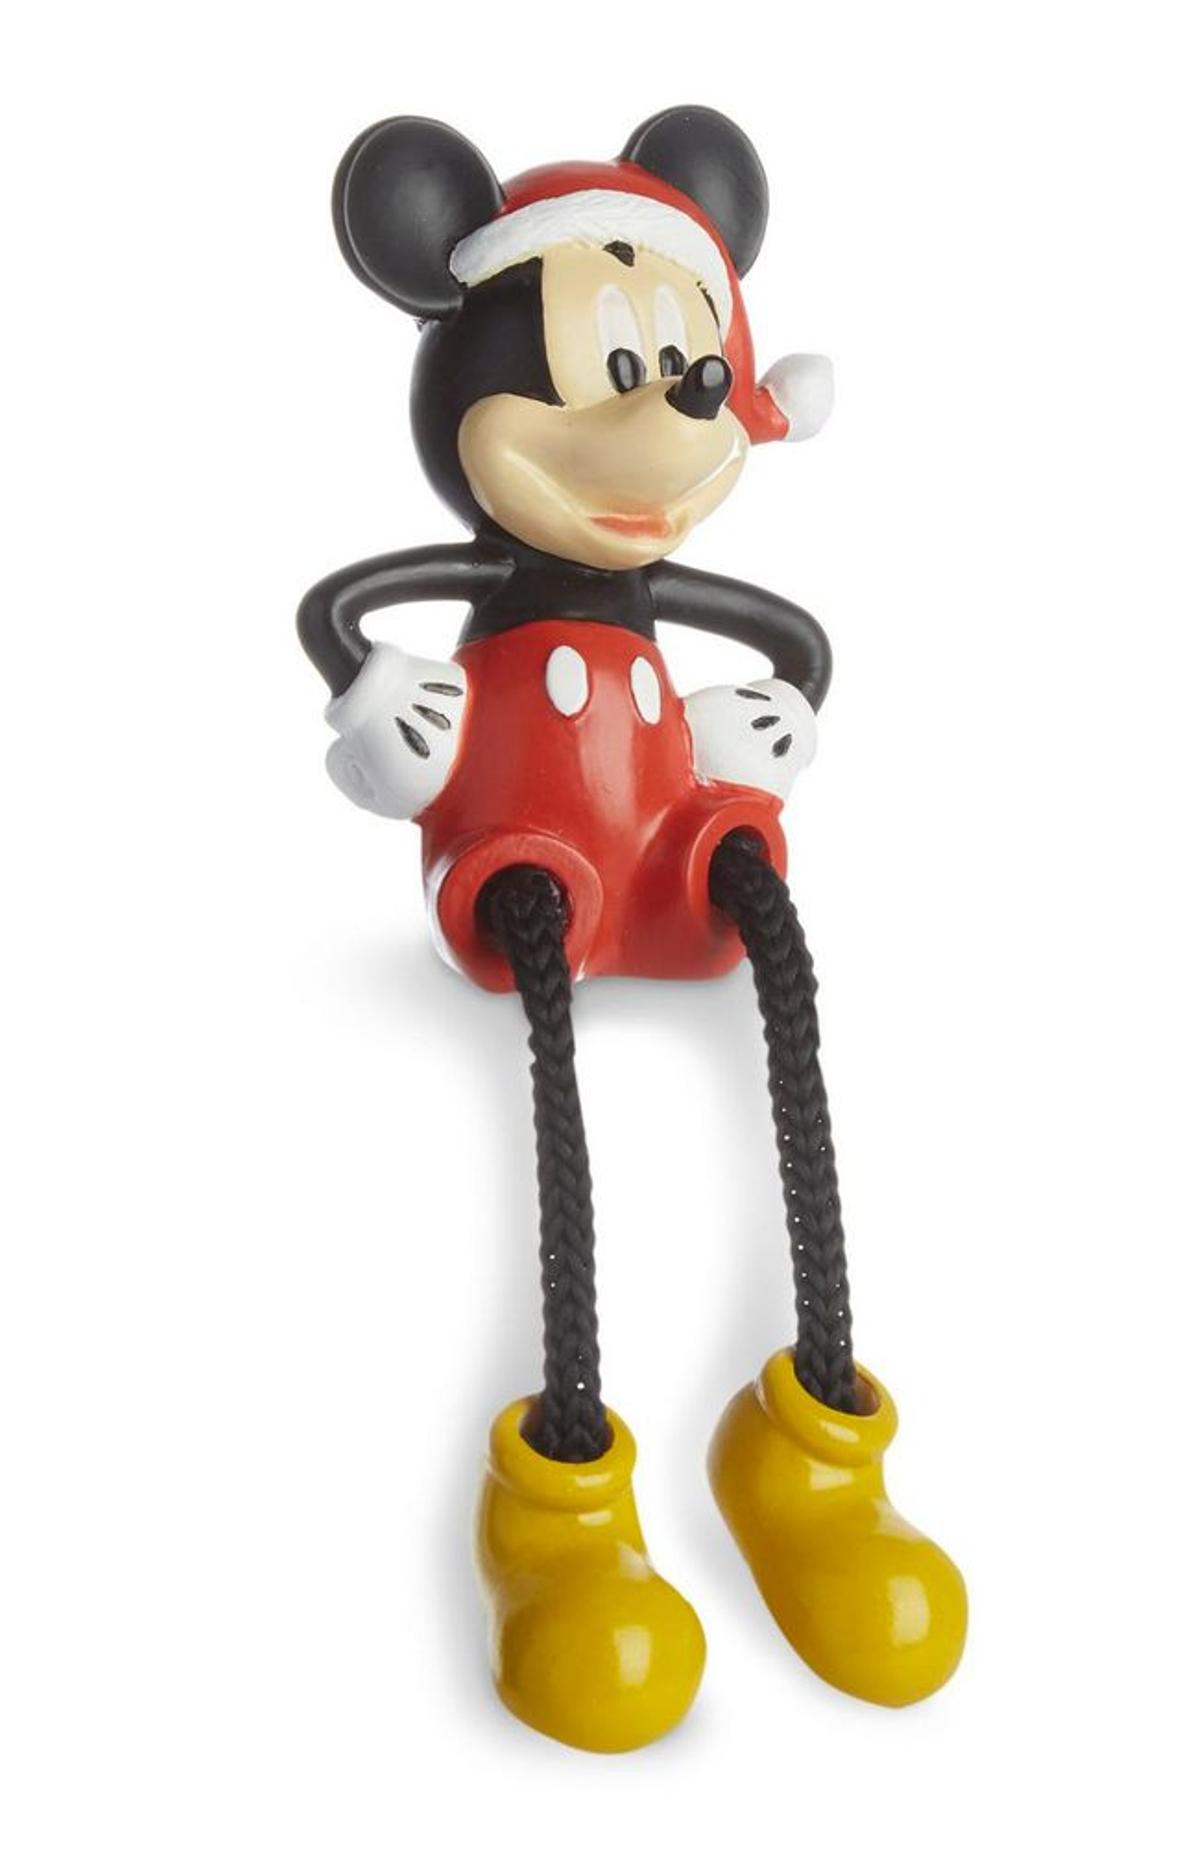 Adorno navideño de Mickey Mouse